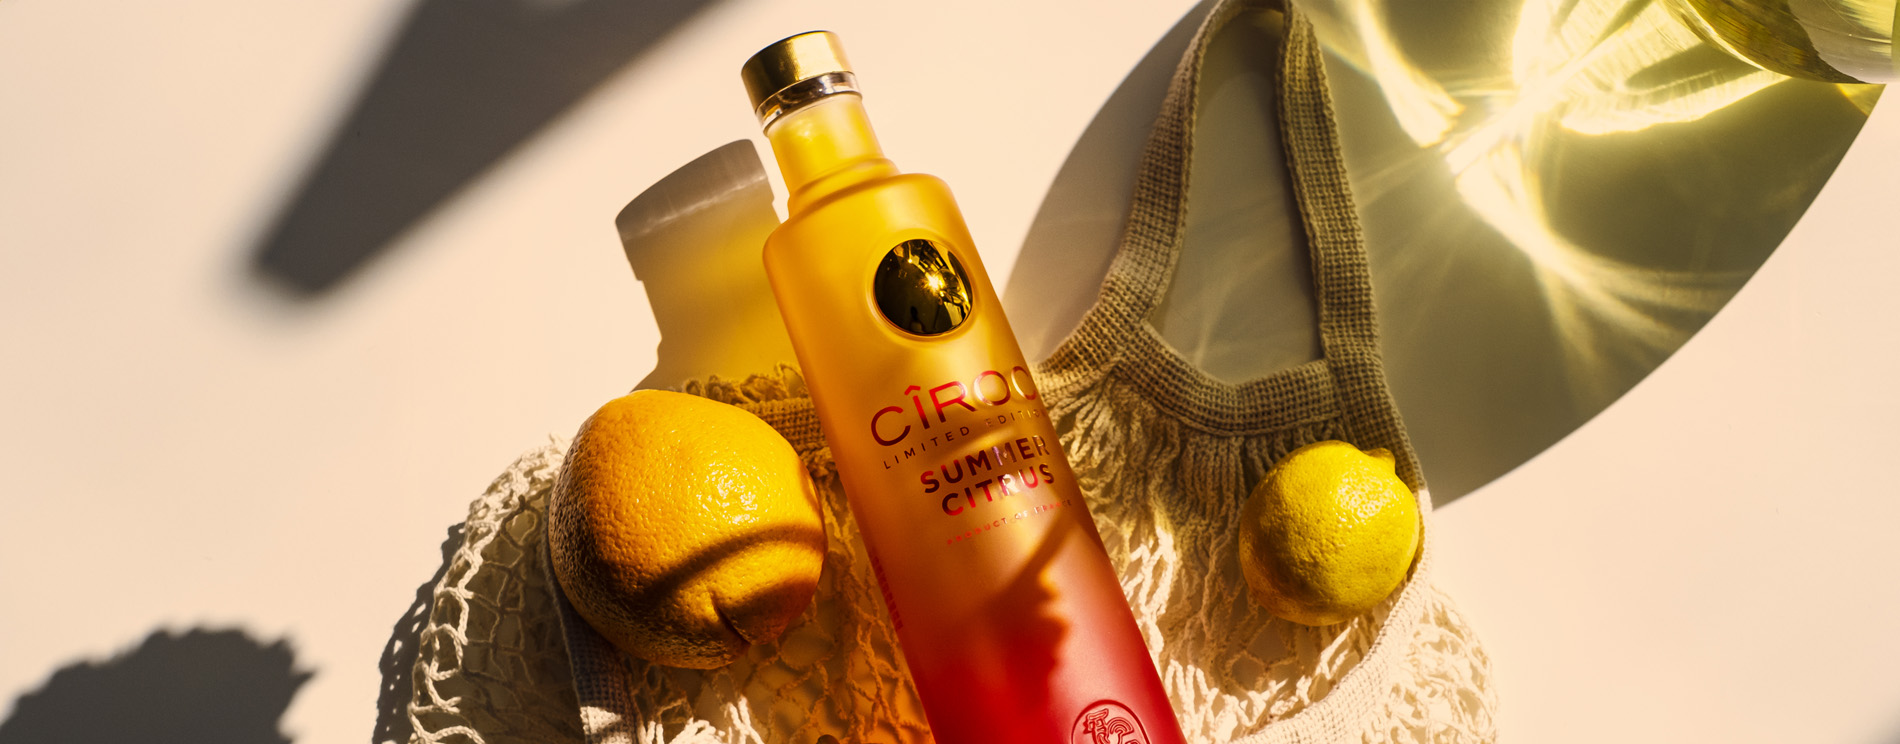 Ciroc Vodka Summer Citrus Limited Edition